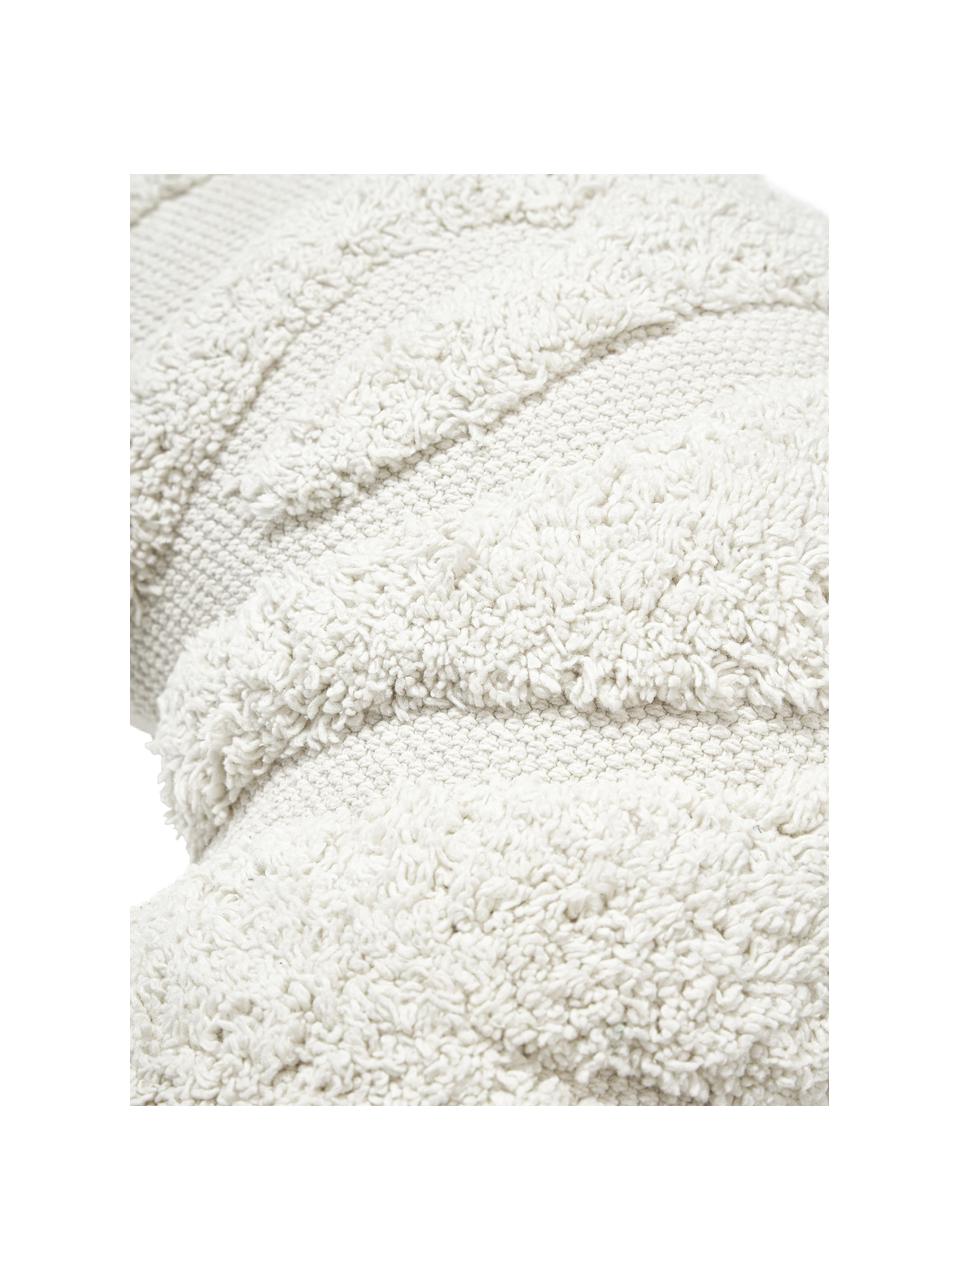 Poduszka w stylu boho Laerke, Tapicerka: 100% bawełna organiczna z, Kremowobiały, S 40 cm